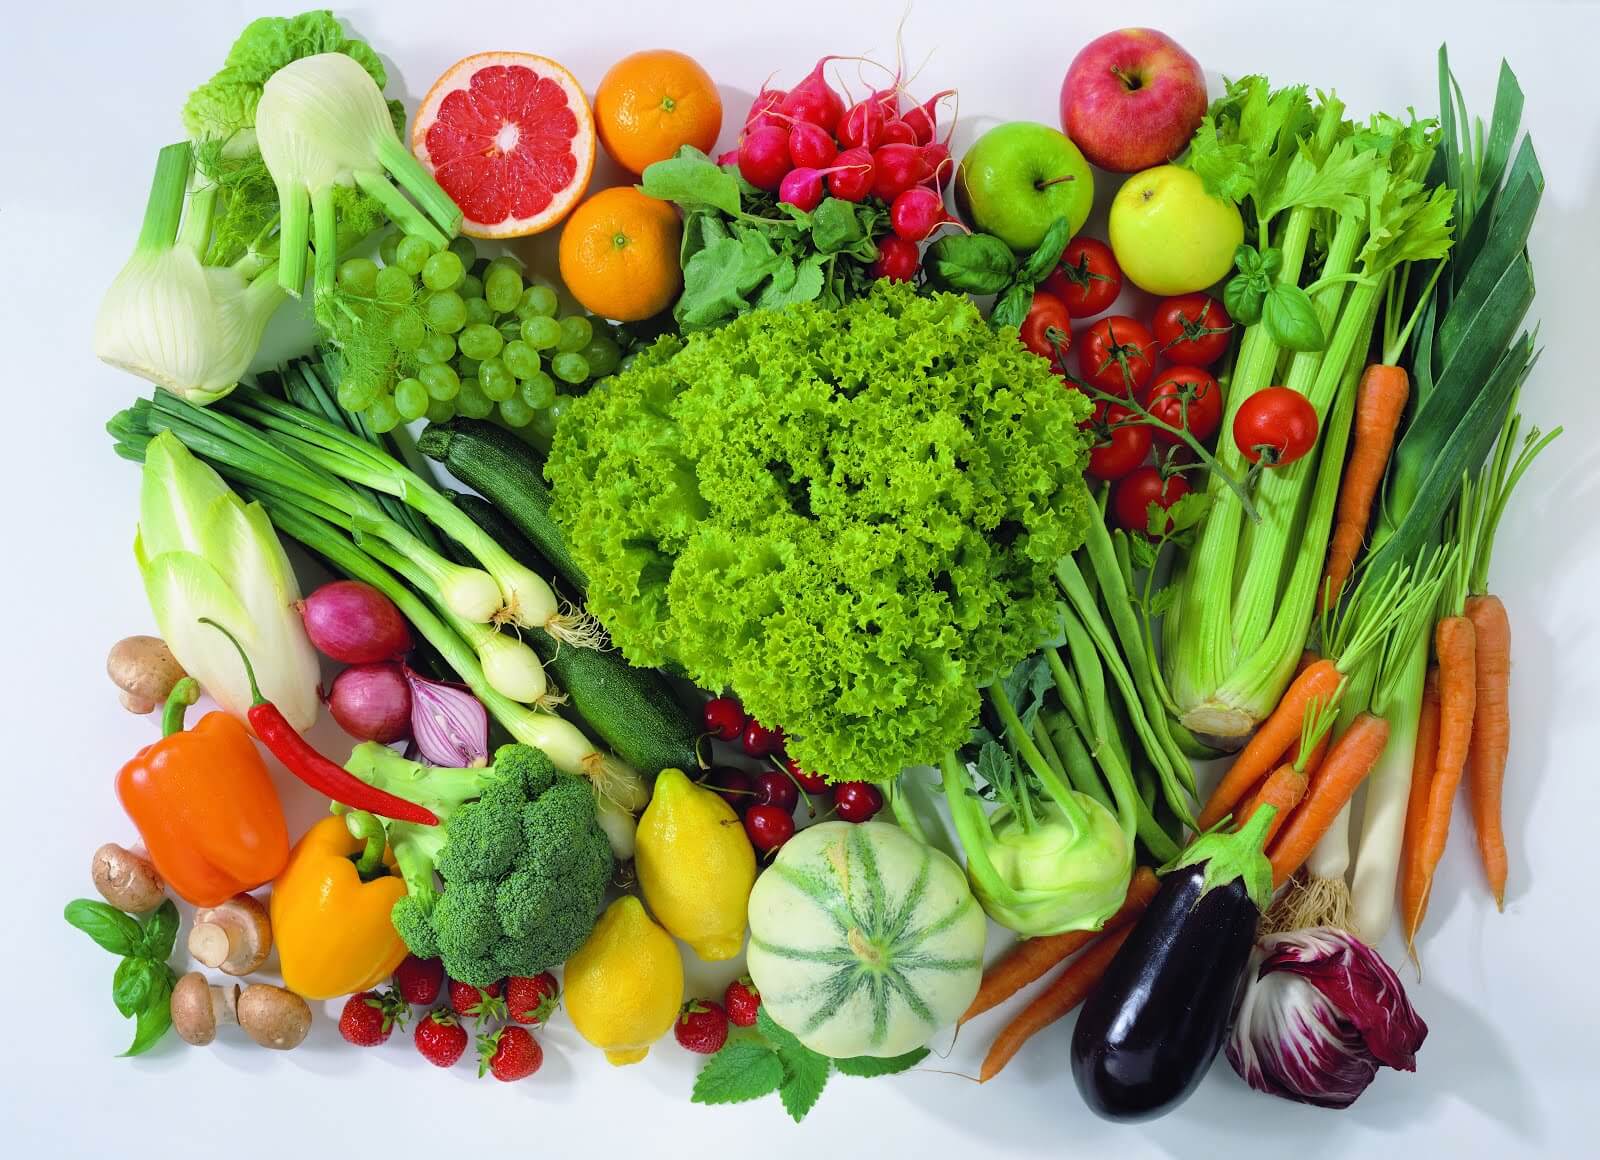 6 grandes ventajas de consumir verduras y frutas cada día